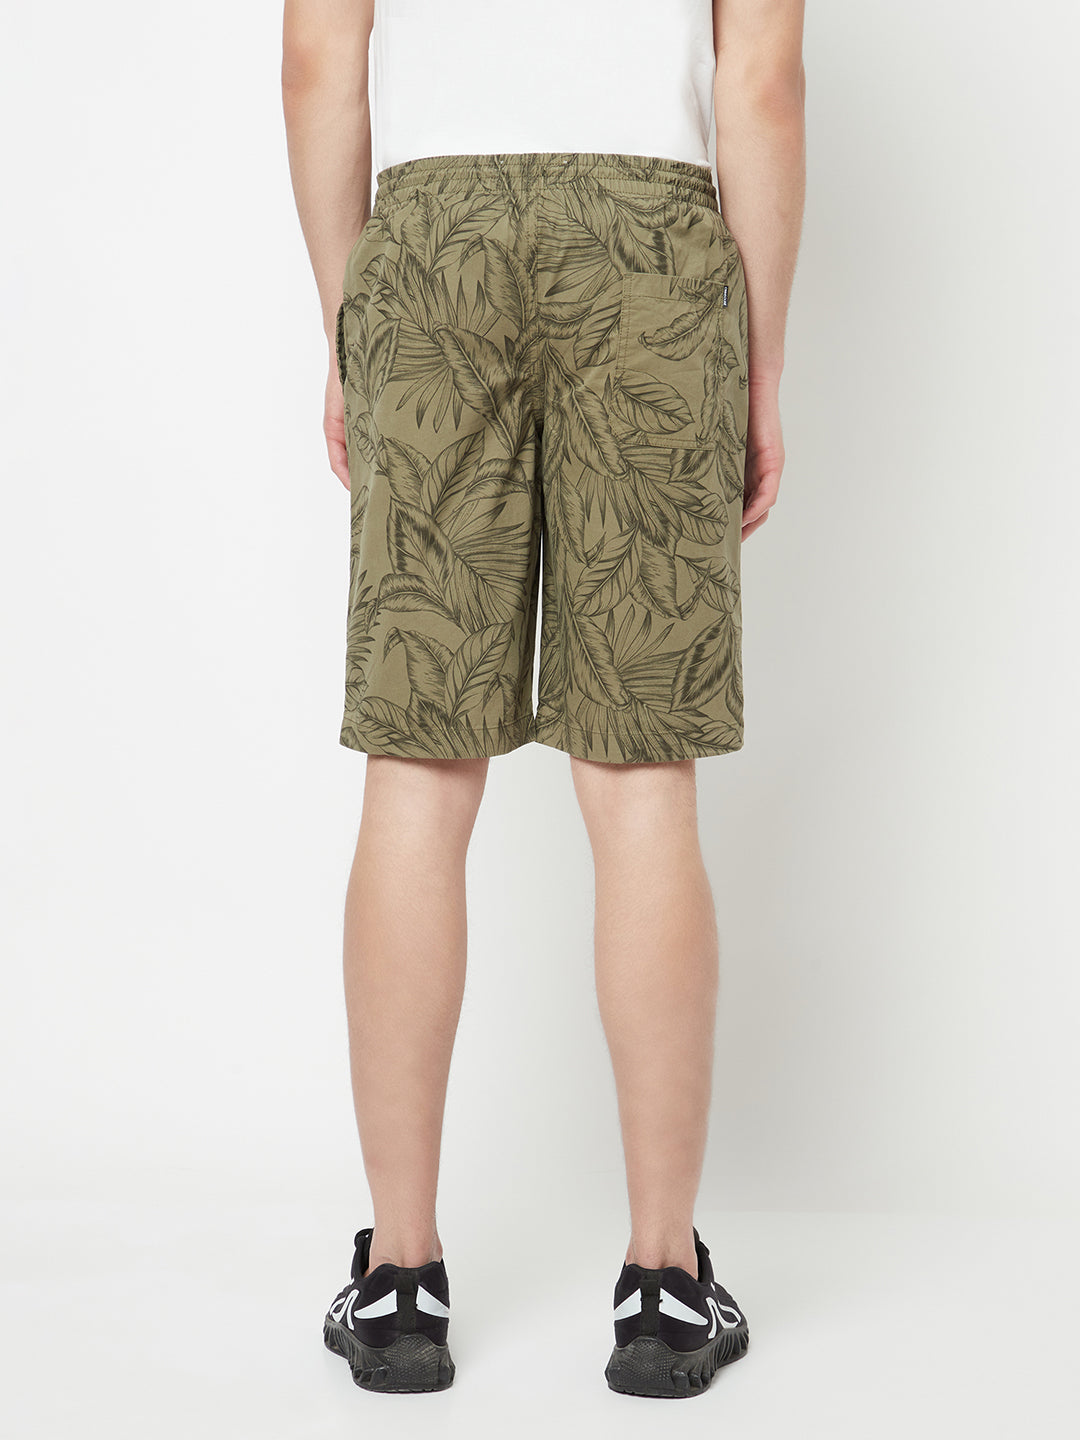 Olive Floral Printed Shorts - Men Shorts